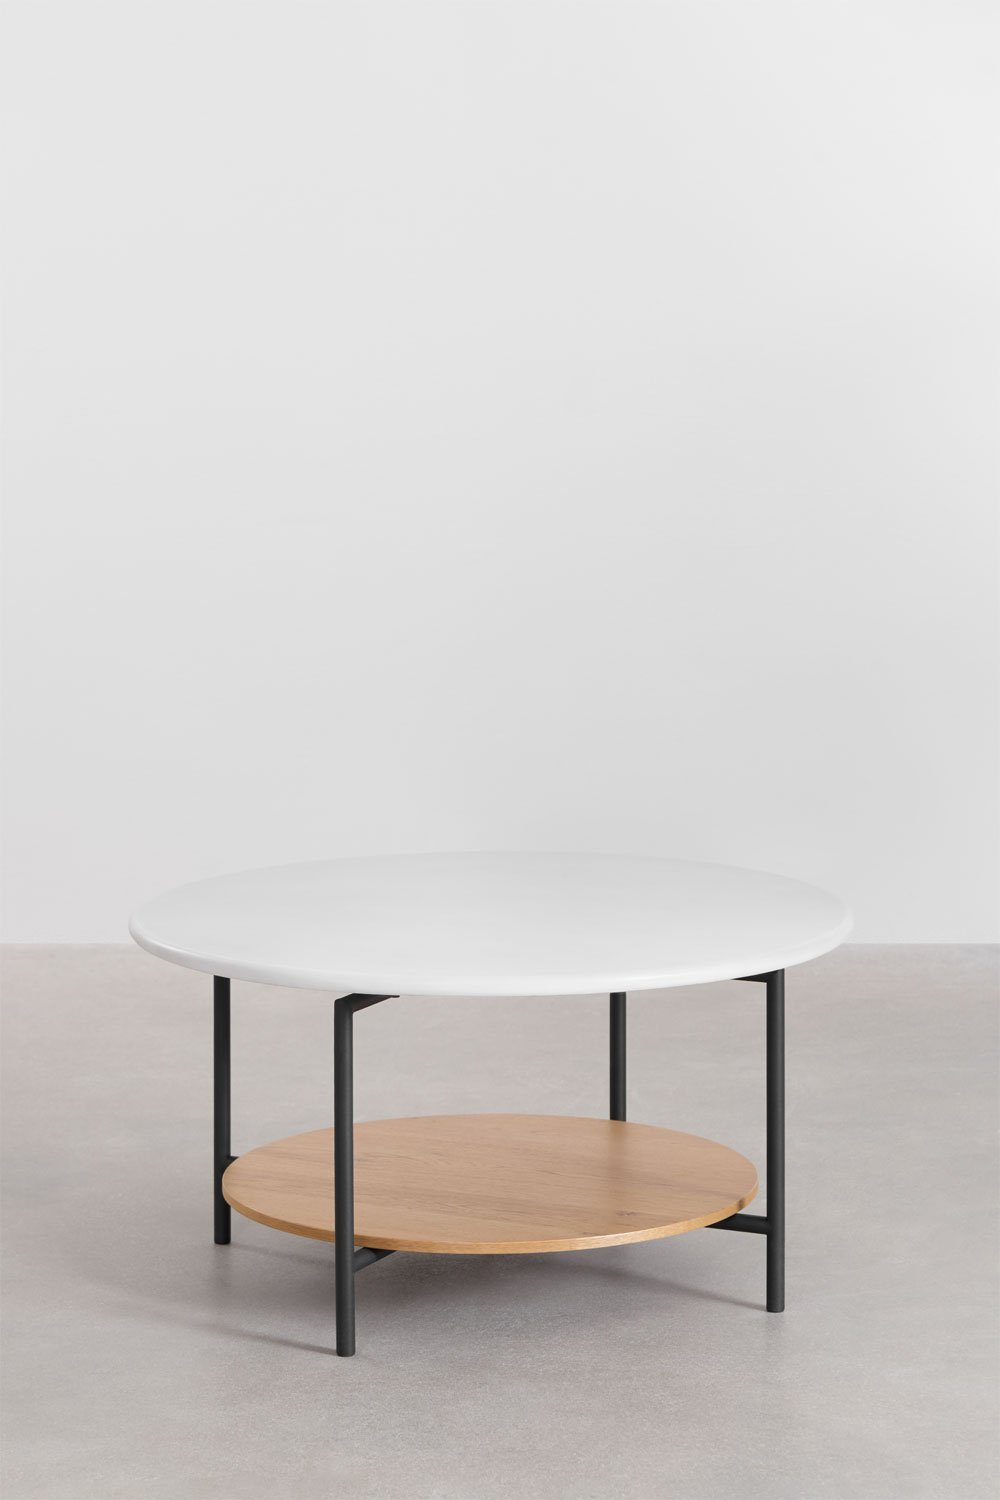 Table basse ronde en acier et bois (Ø80 cm) Paliseda, image de la galerie 1